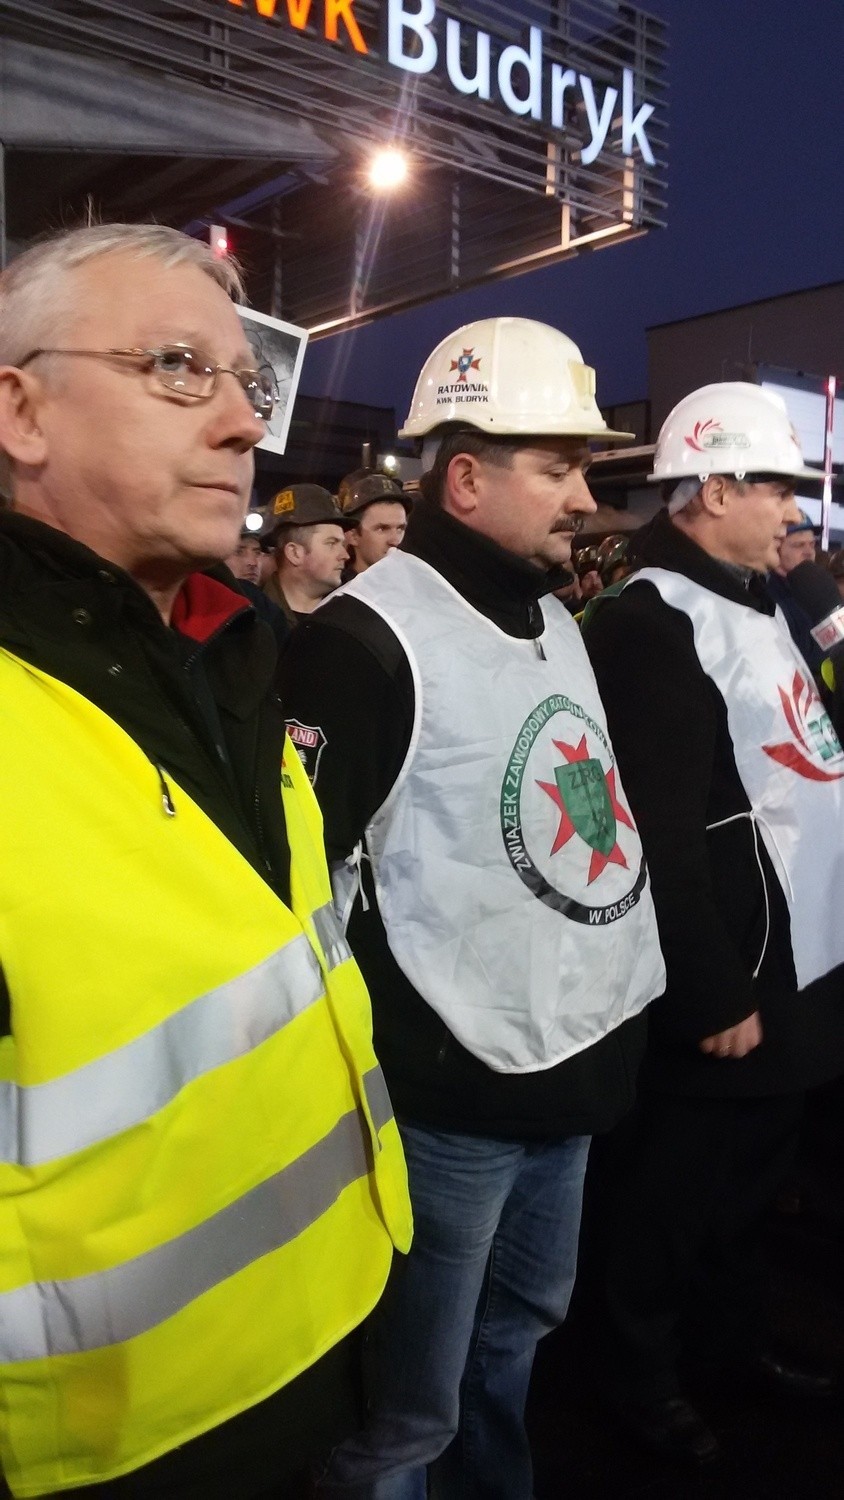 Ornontowice: Wiec górników z KWK Budryk nadawała na żywo TV Trwam